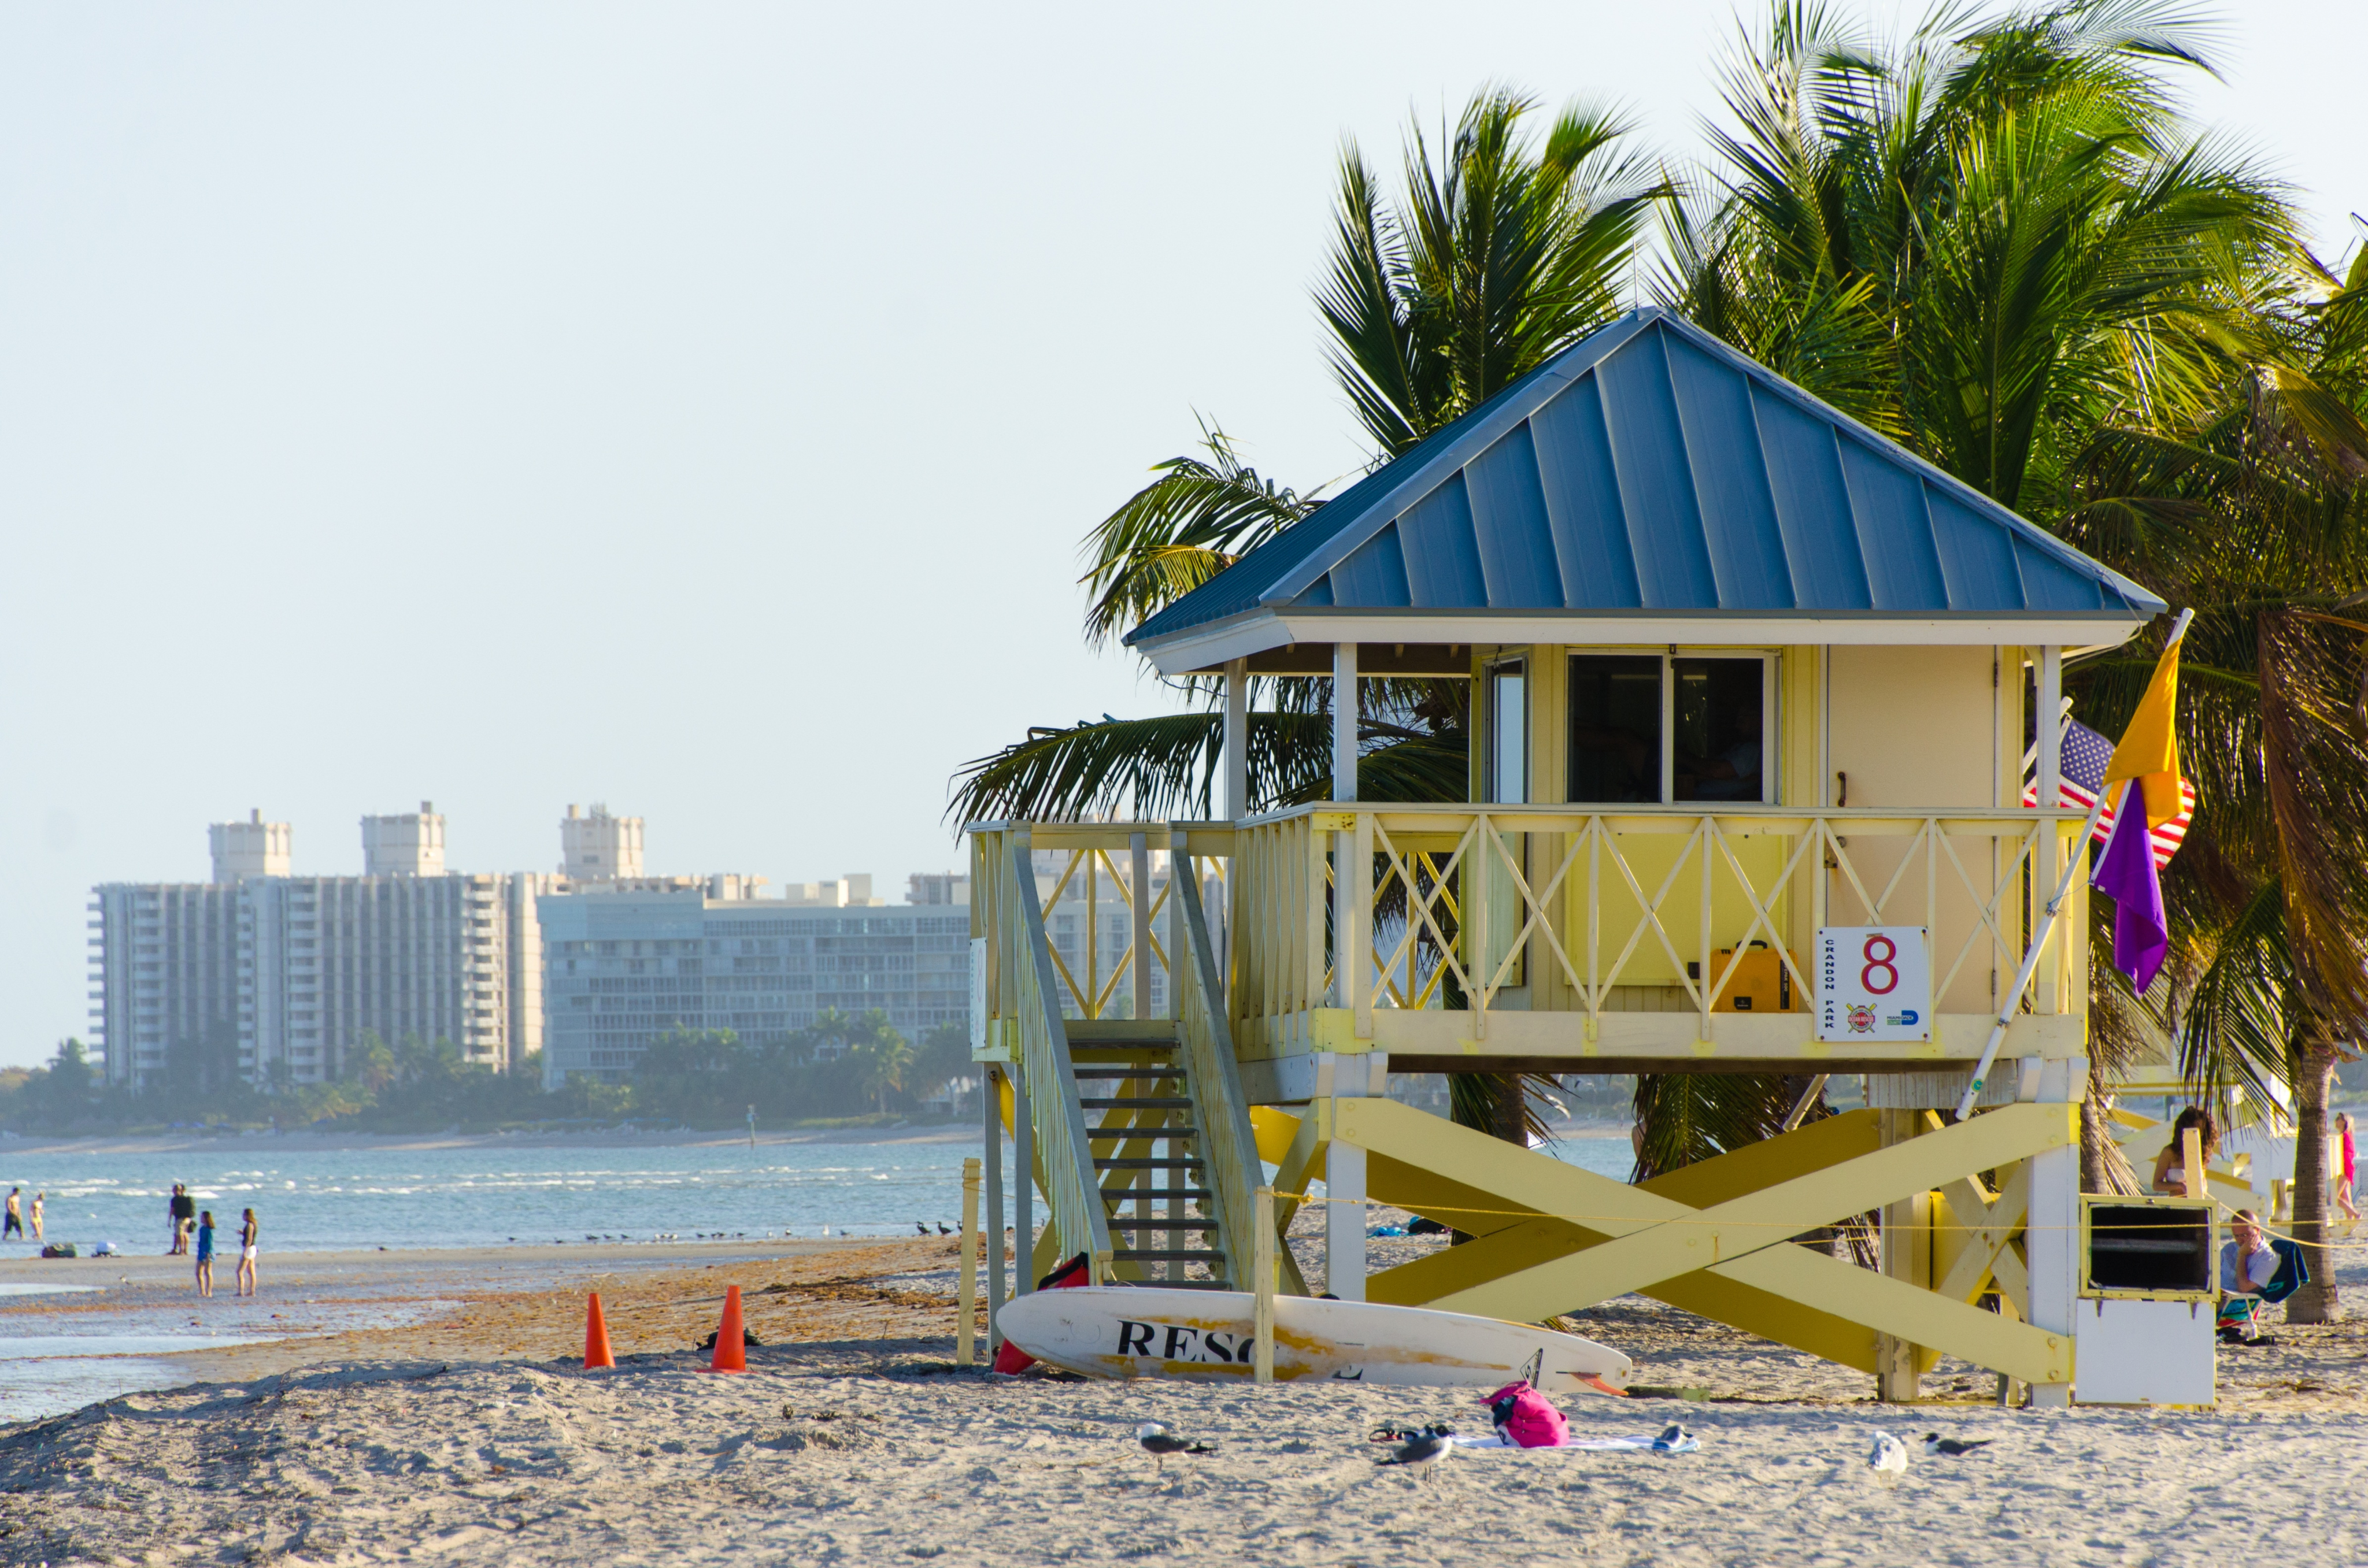 beach-house